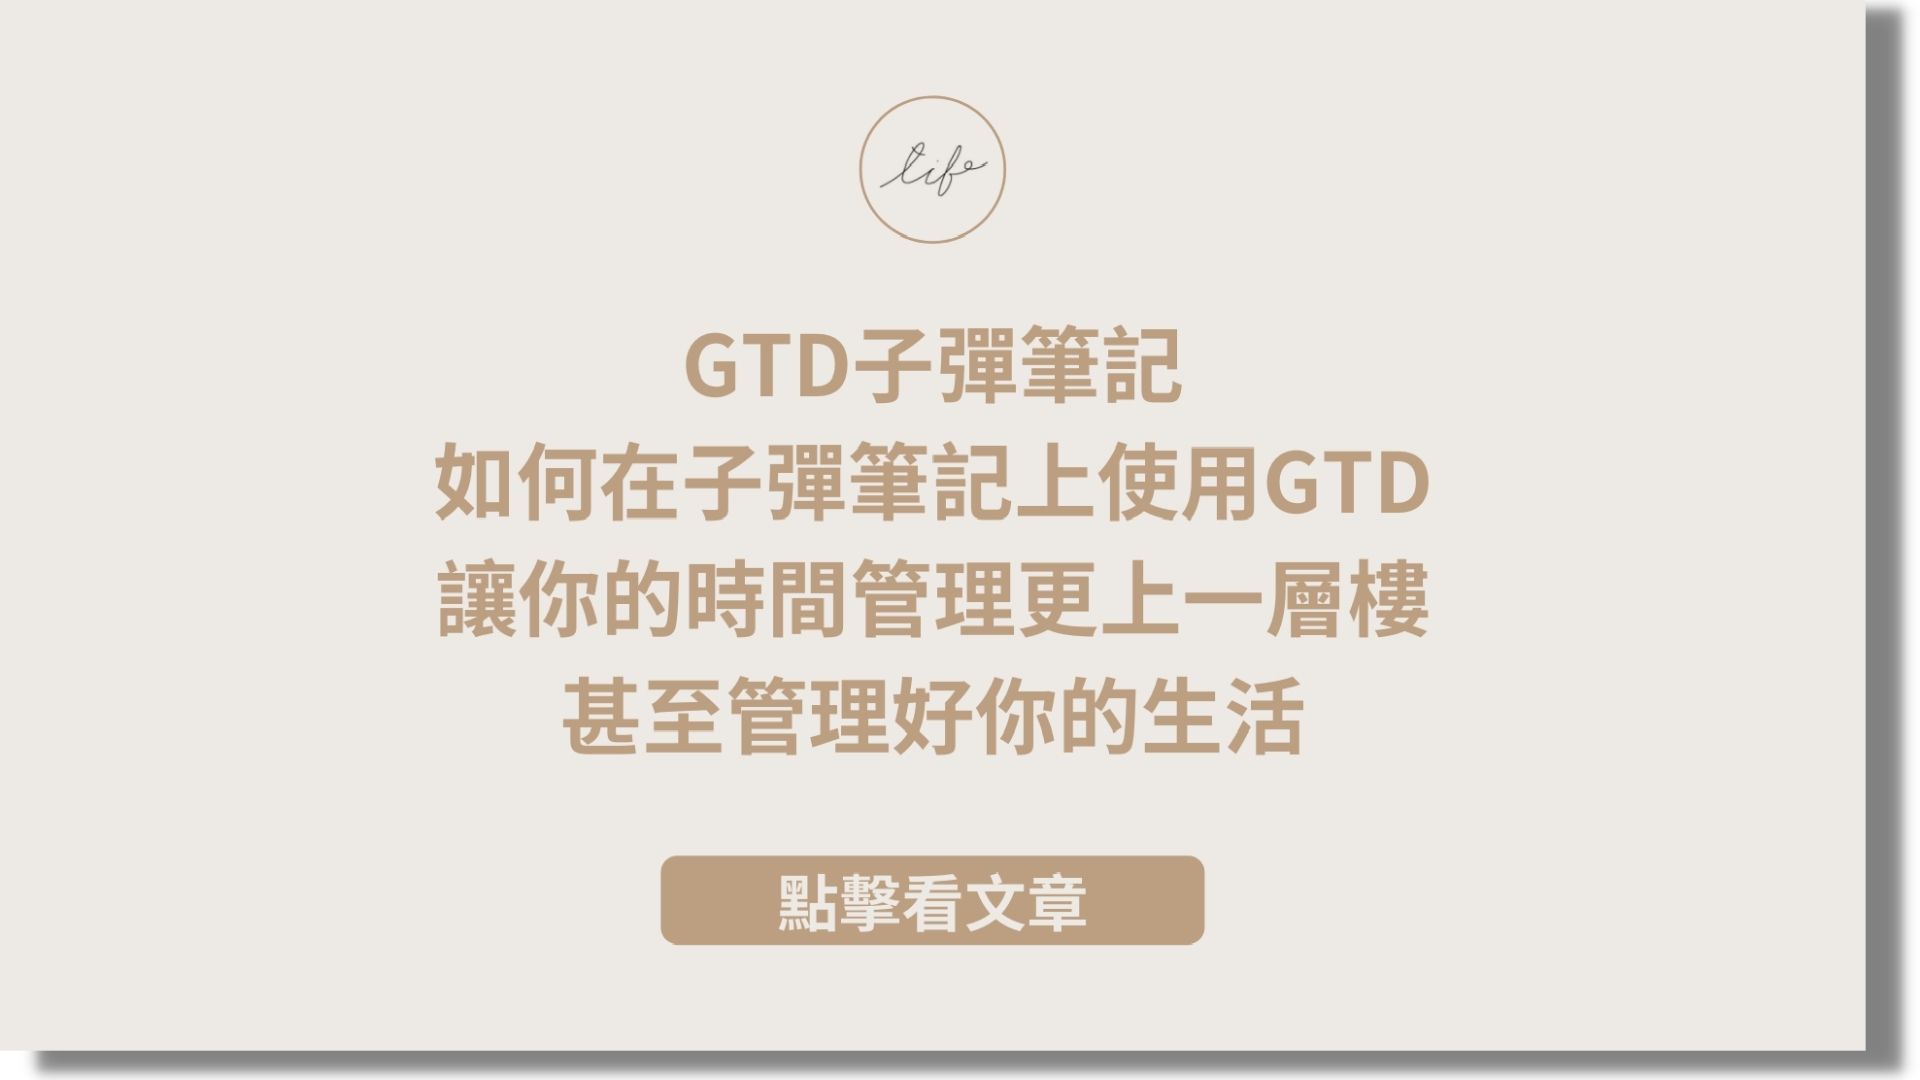 You are currently viewing GTD子彈筆記，如何在子彈筆記上使用GTD，讓你的時間管理更上一層樓，甚至管理好你的生活